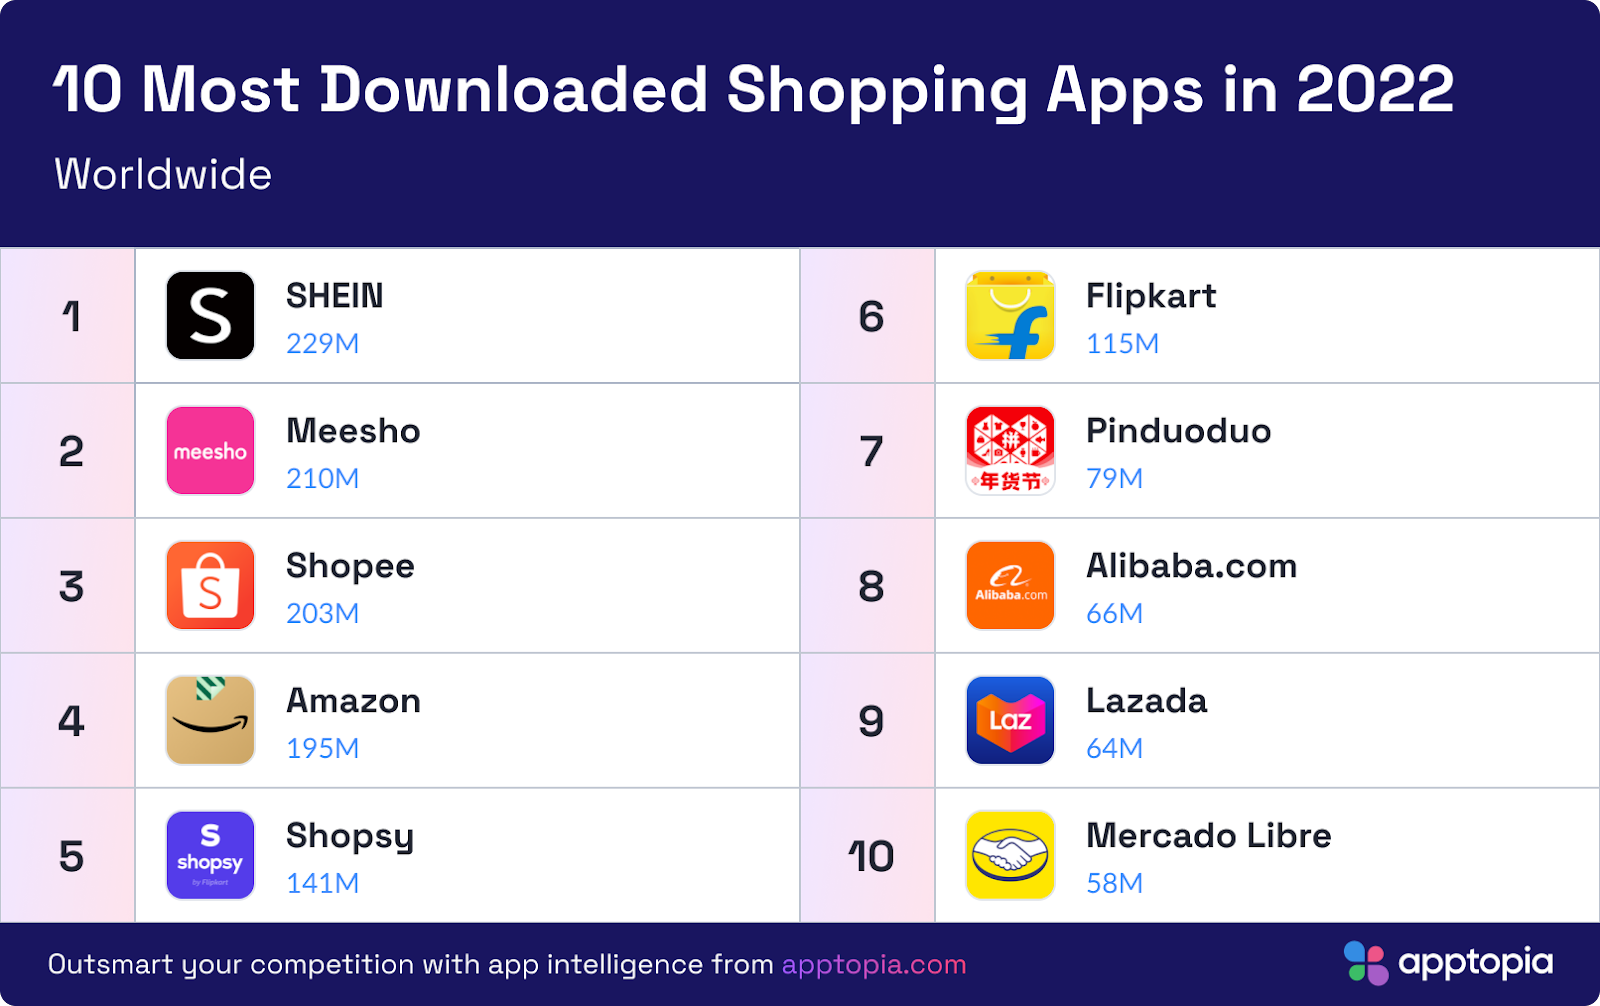 TikTok Is the Most Downloaded App Worldwide in 2022 So Far